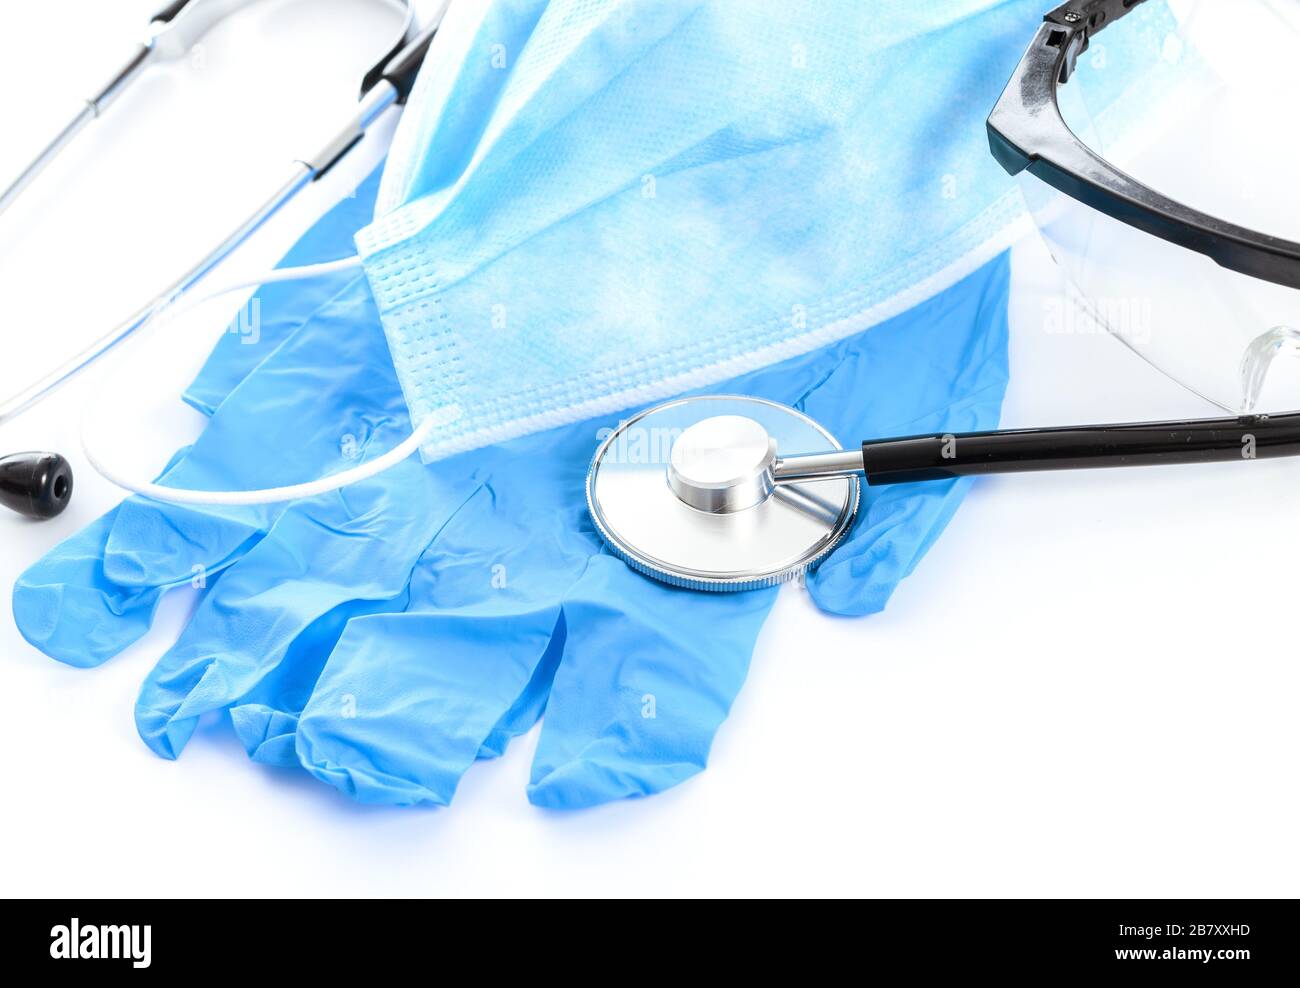 Konzept der medizinischen Schutzausrüstung während einer Virus-Epidemie - chirurgische Maske, Brille, Stethoskop und medizinische Handschuhe. Stockfoto